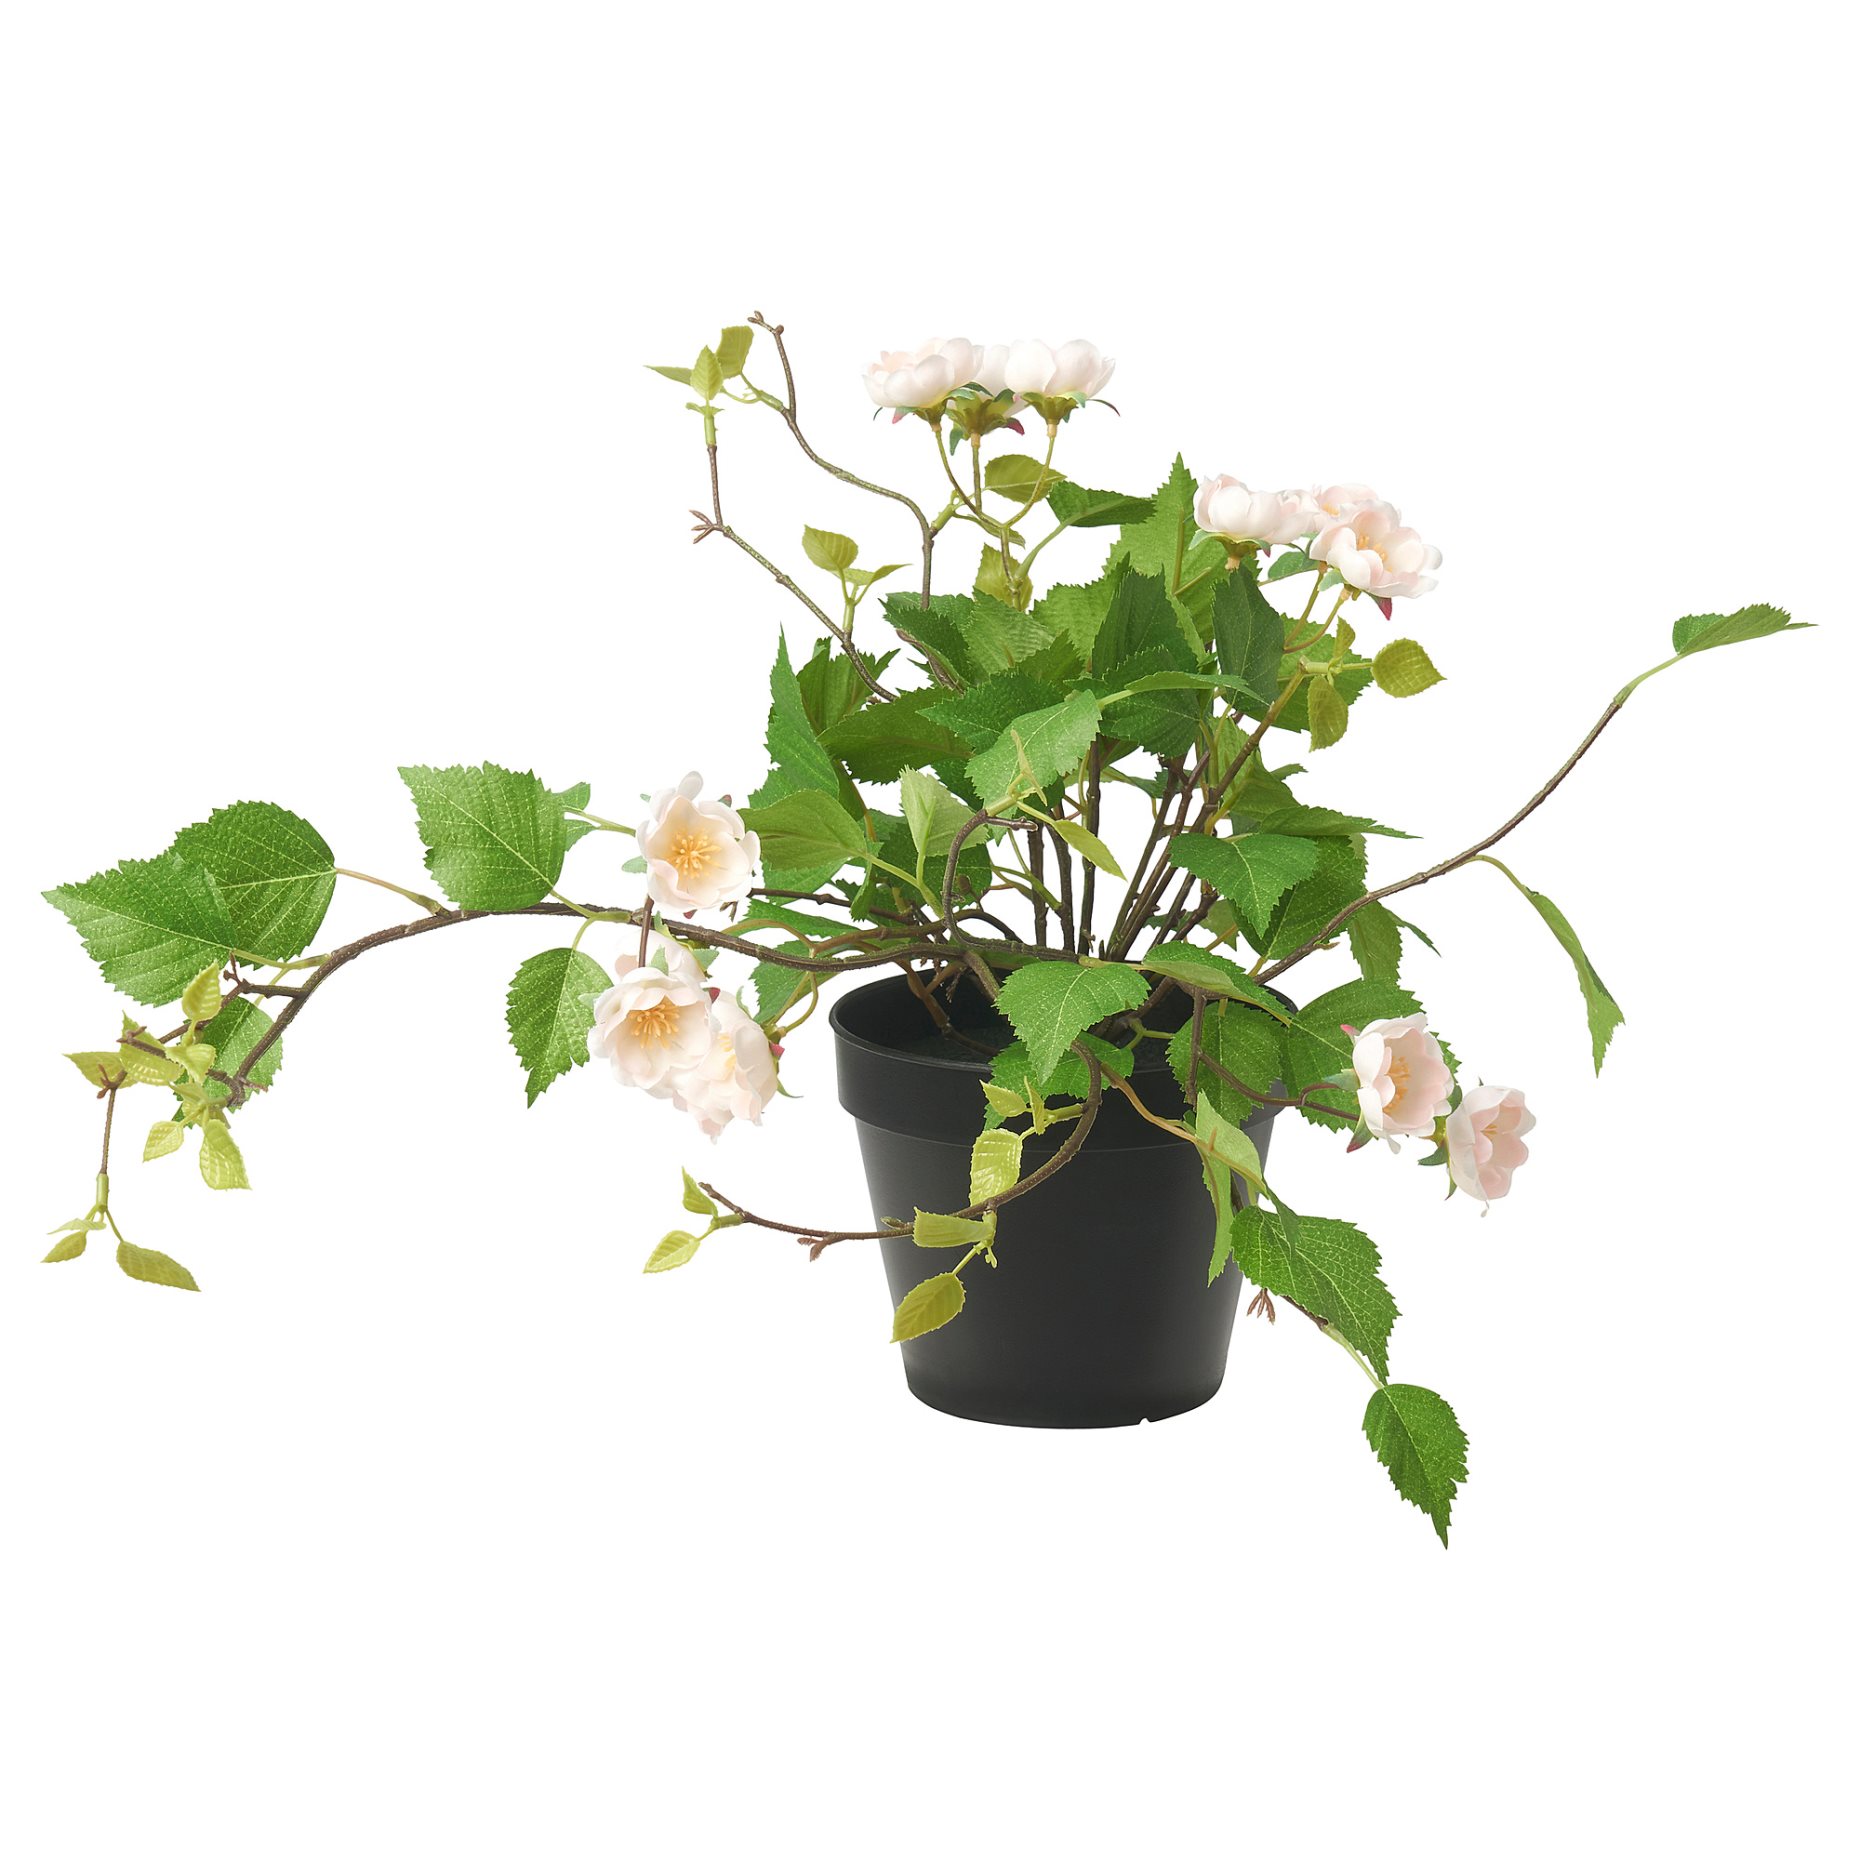 FEJKA, τεχνητό φυτό σε γλάστρα/εσωτερικού/εξωτερικού χώρου/Τριαντάφυλλο, 12 cm, 905.716.89